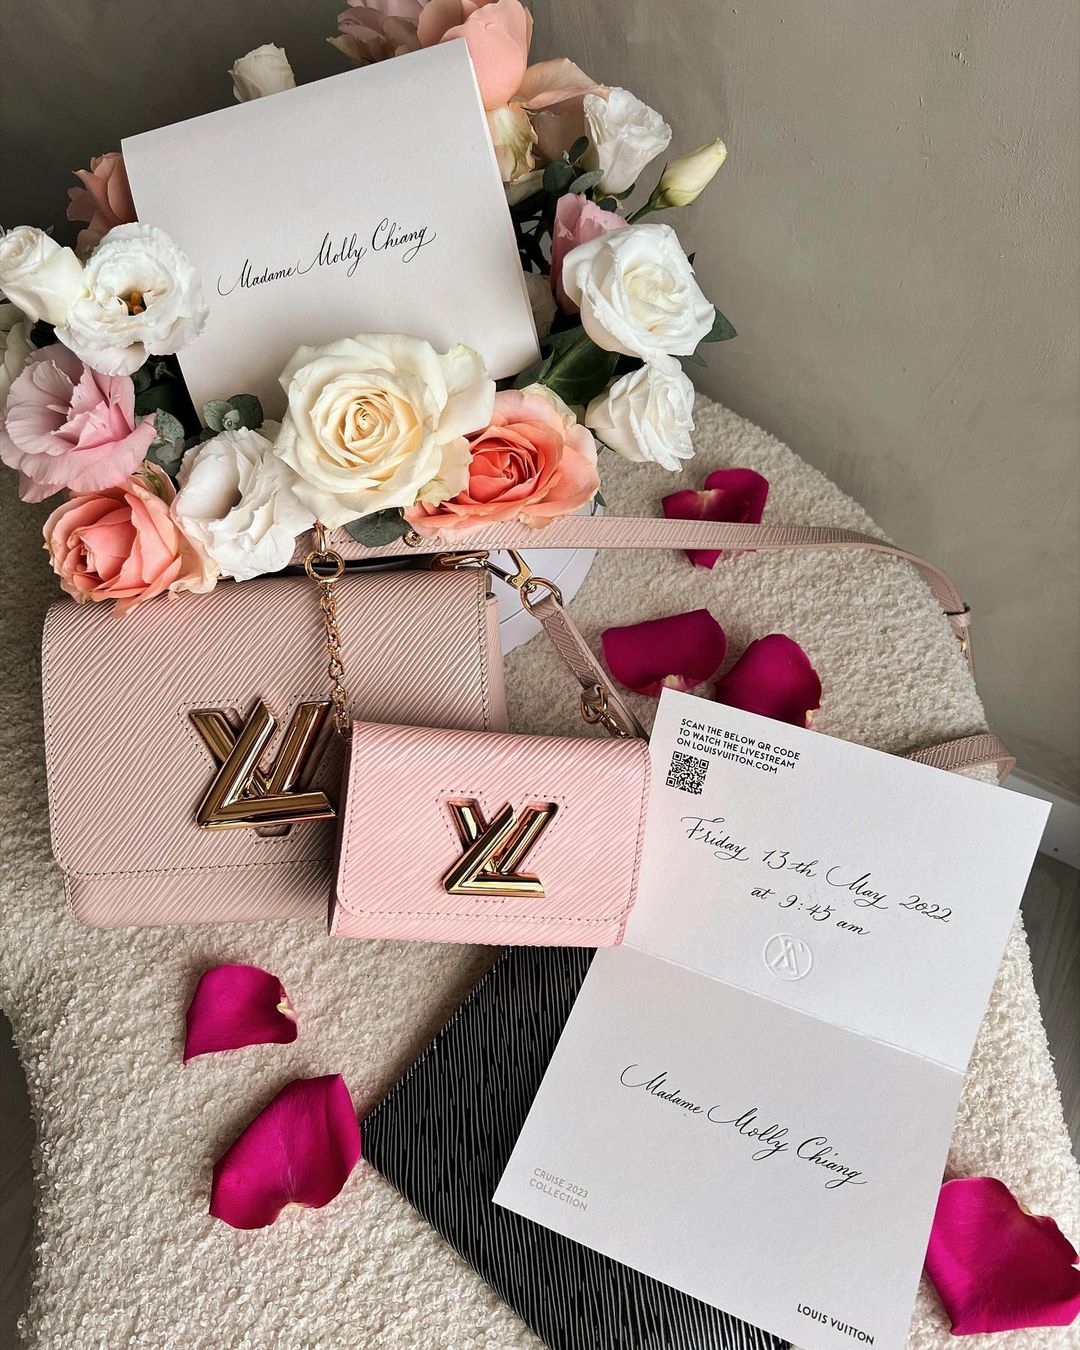 Quà tặng từ nhà Louis Vuitton